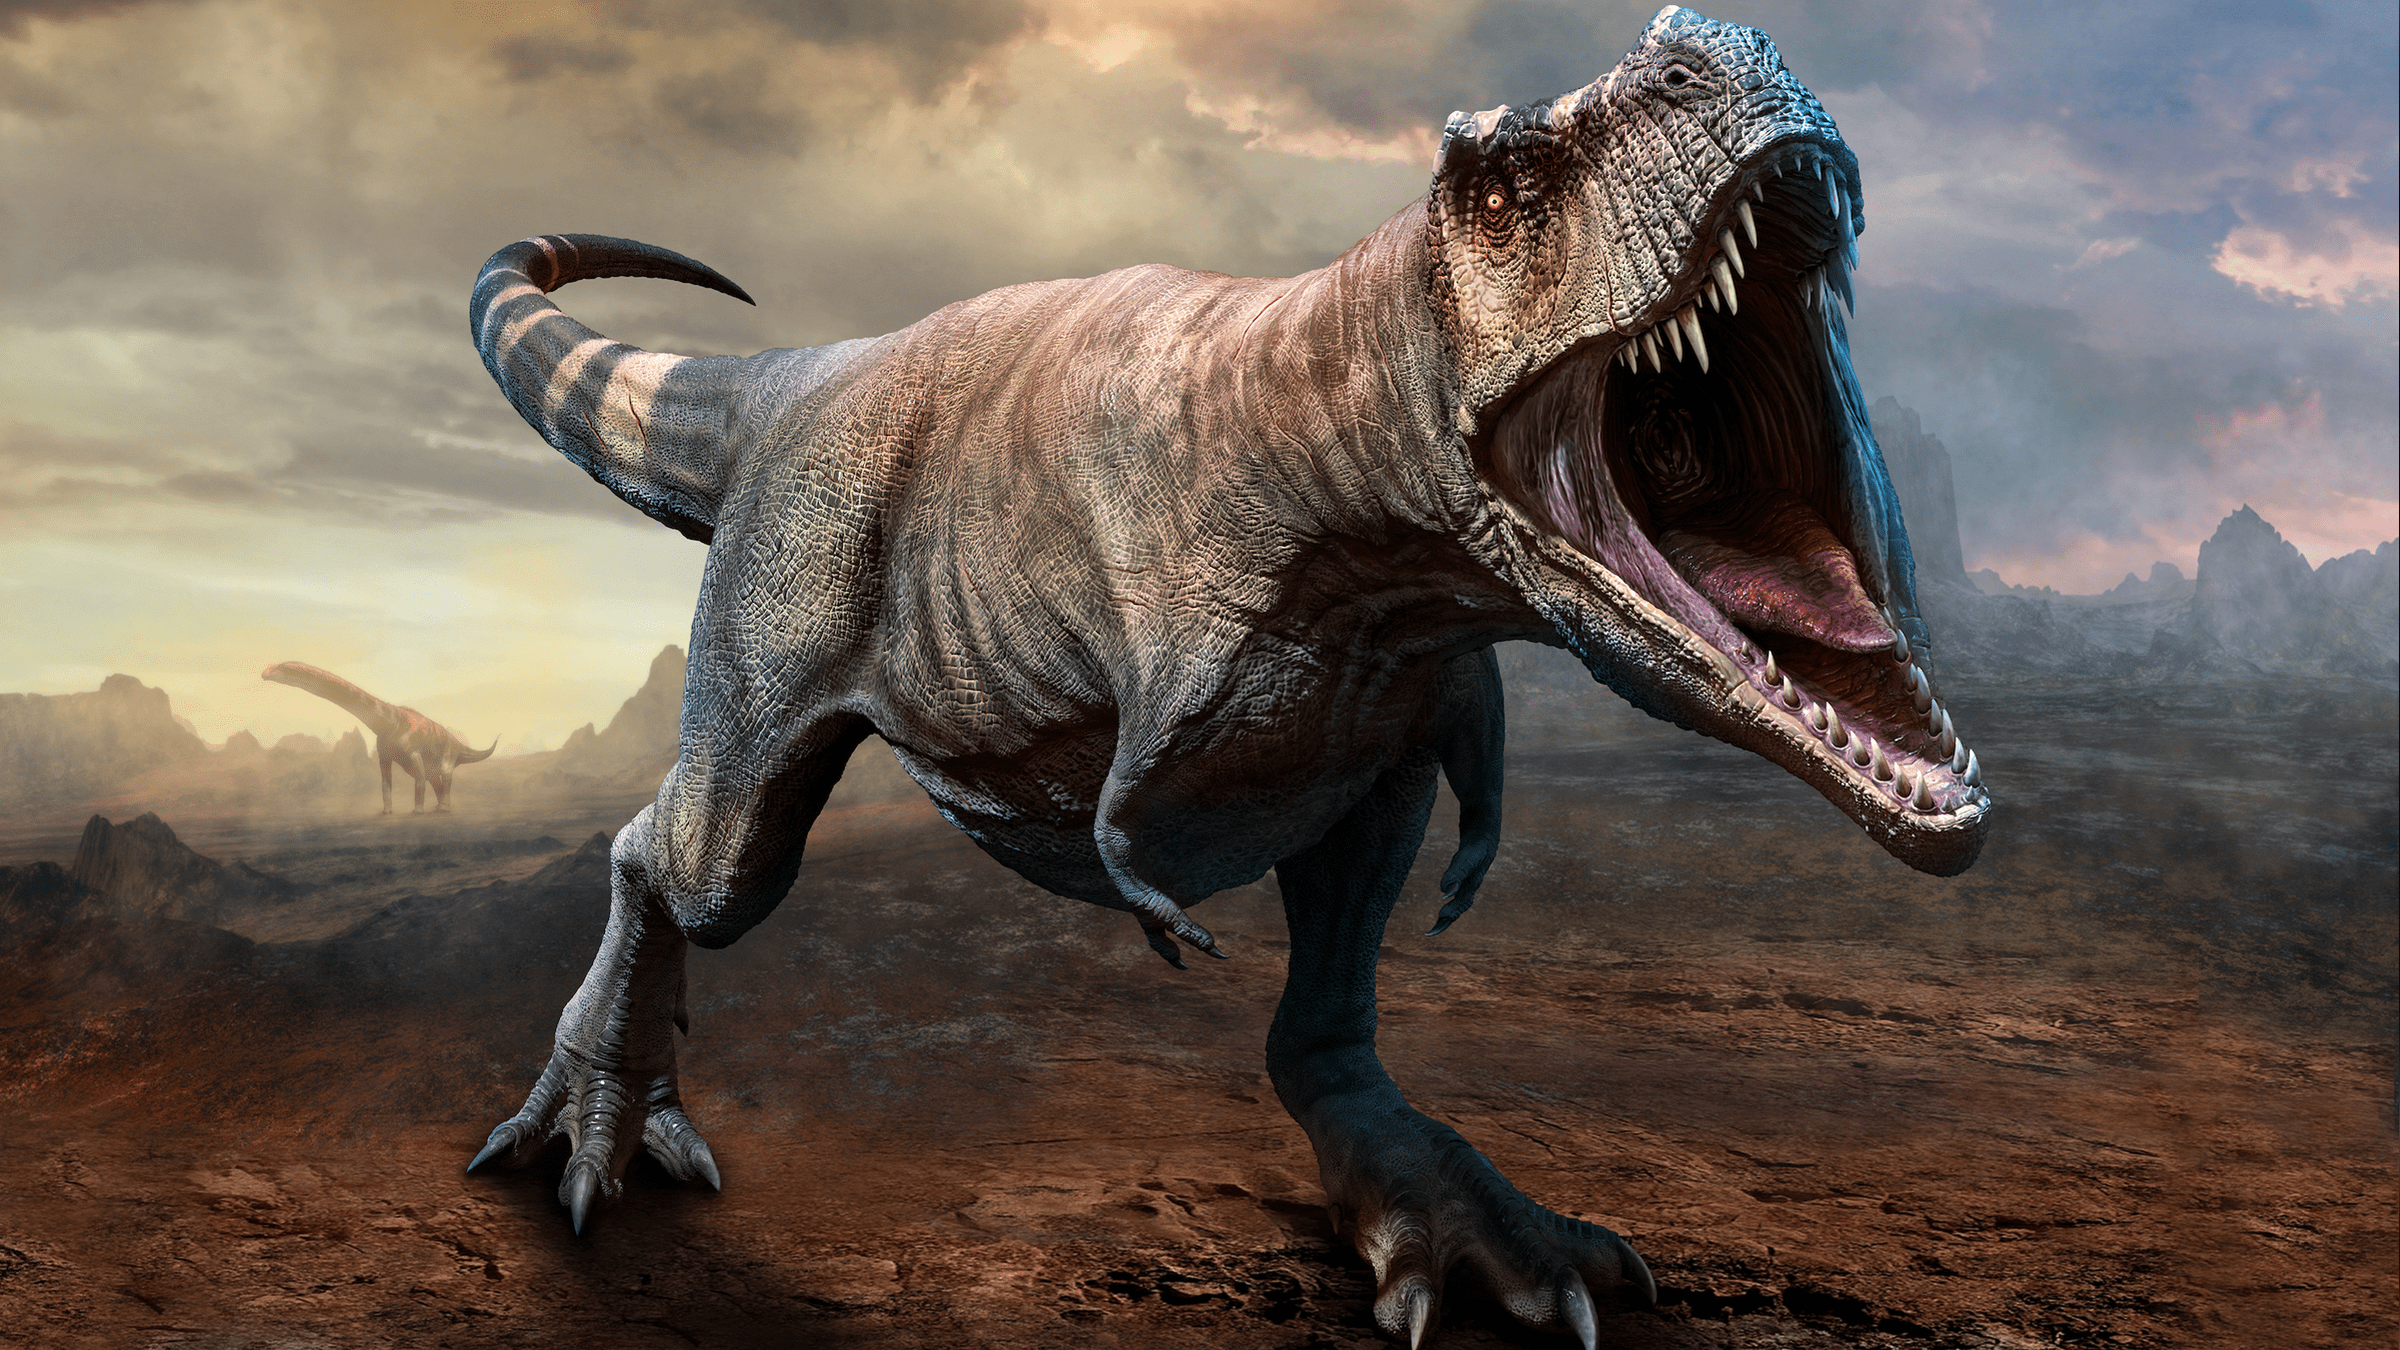 海怪在数百万年前是真实存在的:新化石讲述了海暴龙的兴衰